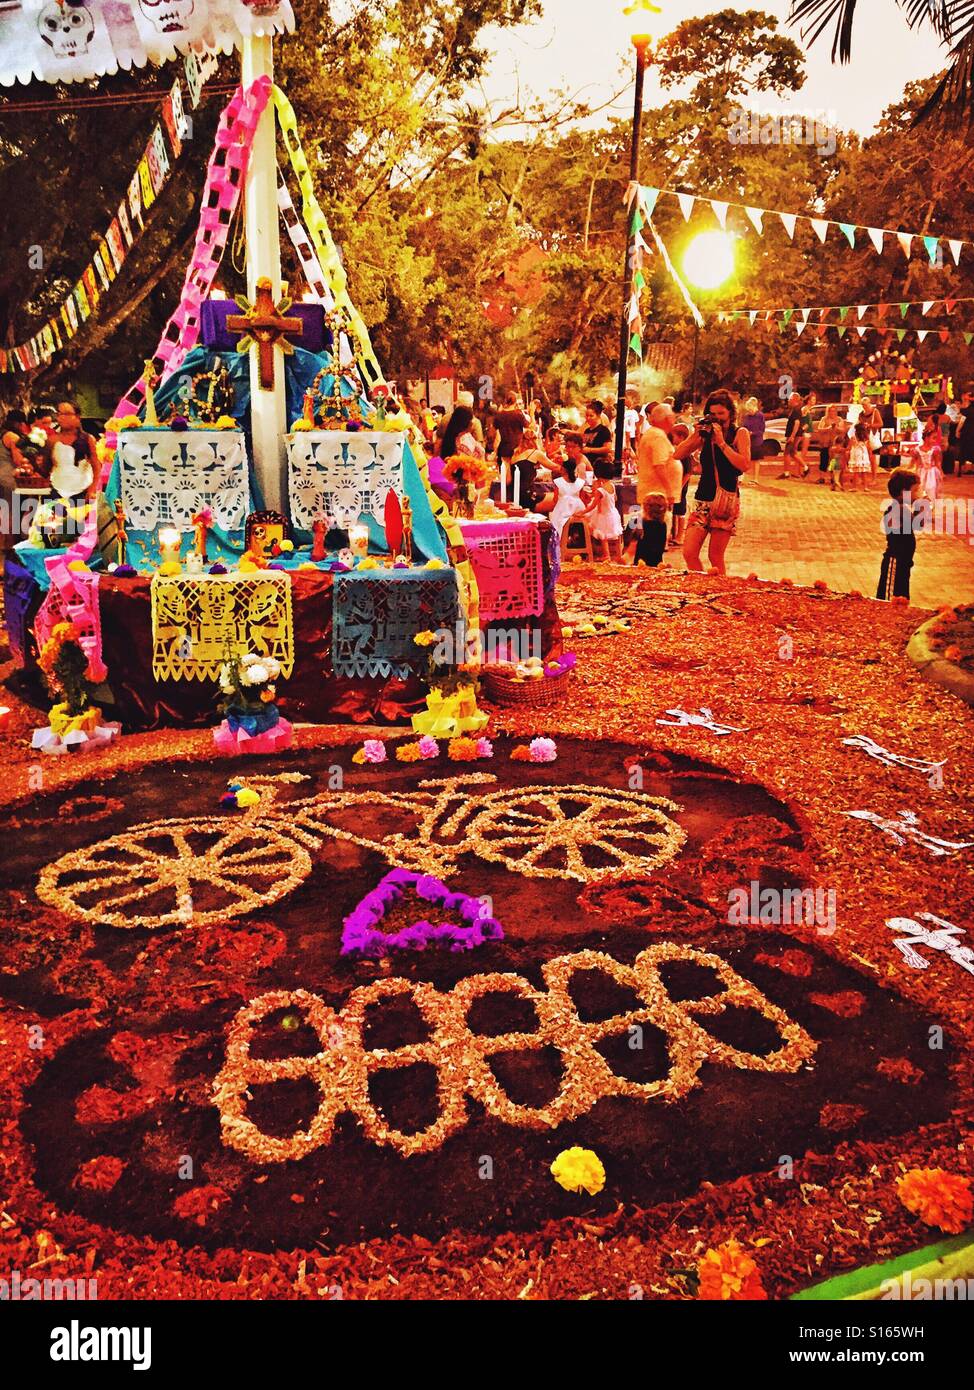 Le calendule, papel picado, fotografie e cimeli di decorare un altare ricordando una persona amata il giorno dei morti in Nayarit, Messico. Foto Stock